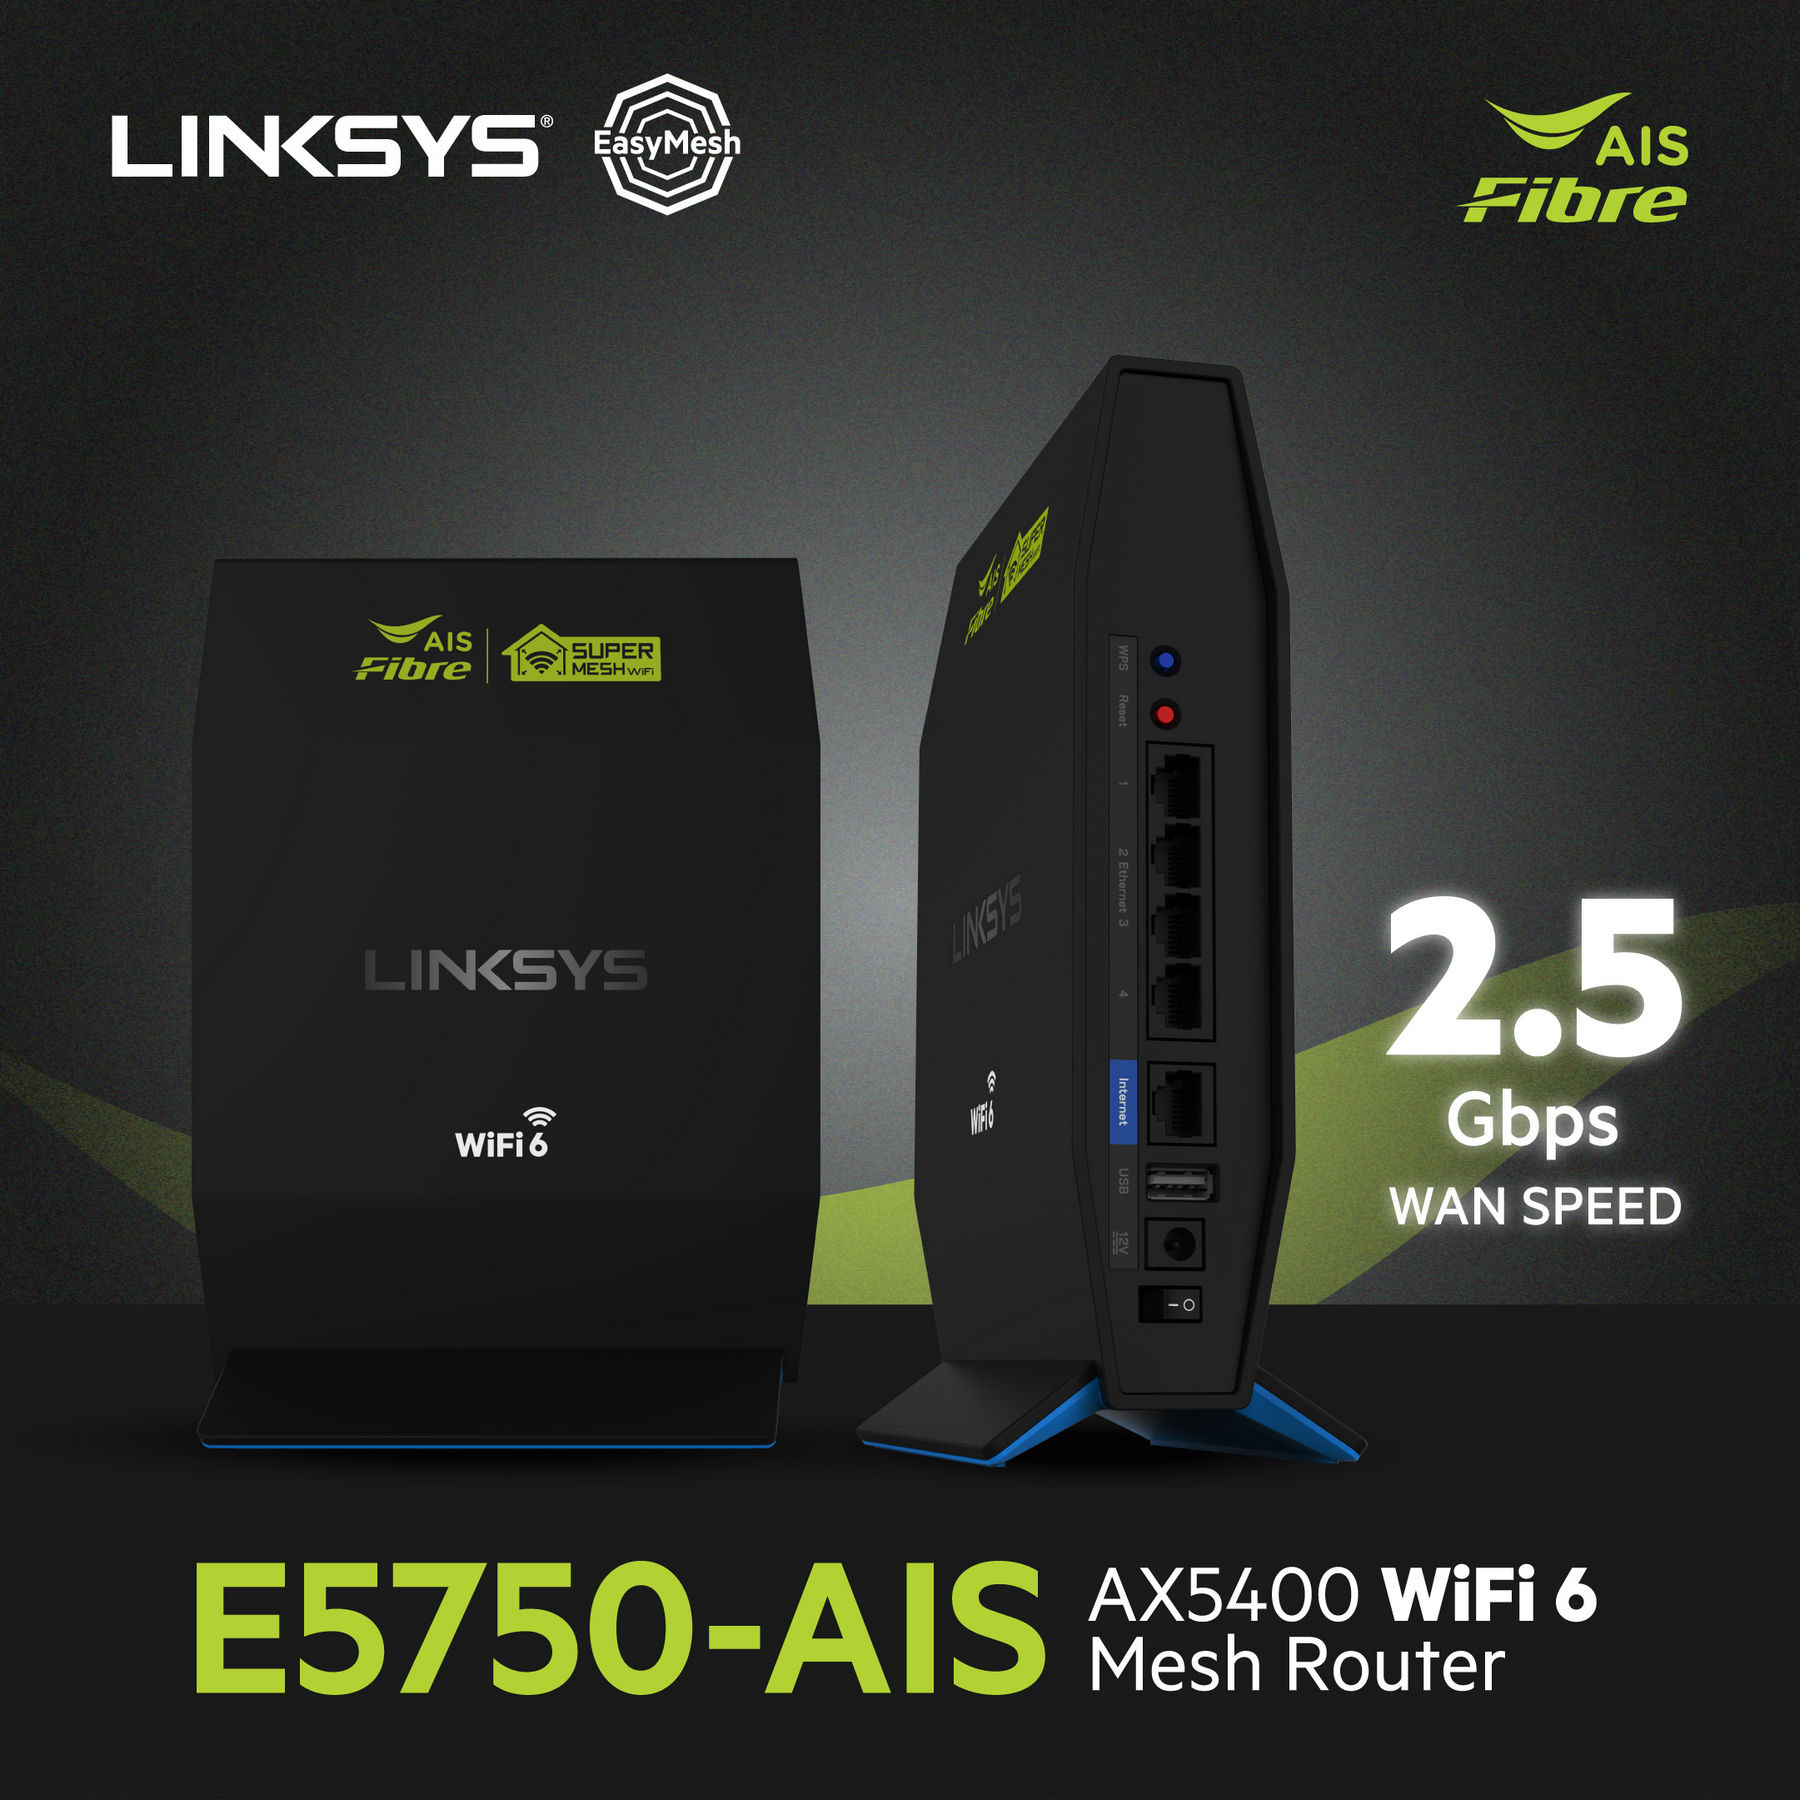 Linksys จับมือ AIS Fibre เปิดตัว E5750-AIS AX5400 WiFi 6 Mesh Router ที่มาพร้อมความแรงระดับ 2Gbps Multi-Gigabit Wan ครั้งแรกของโลก